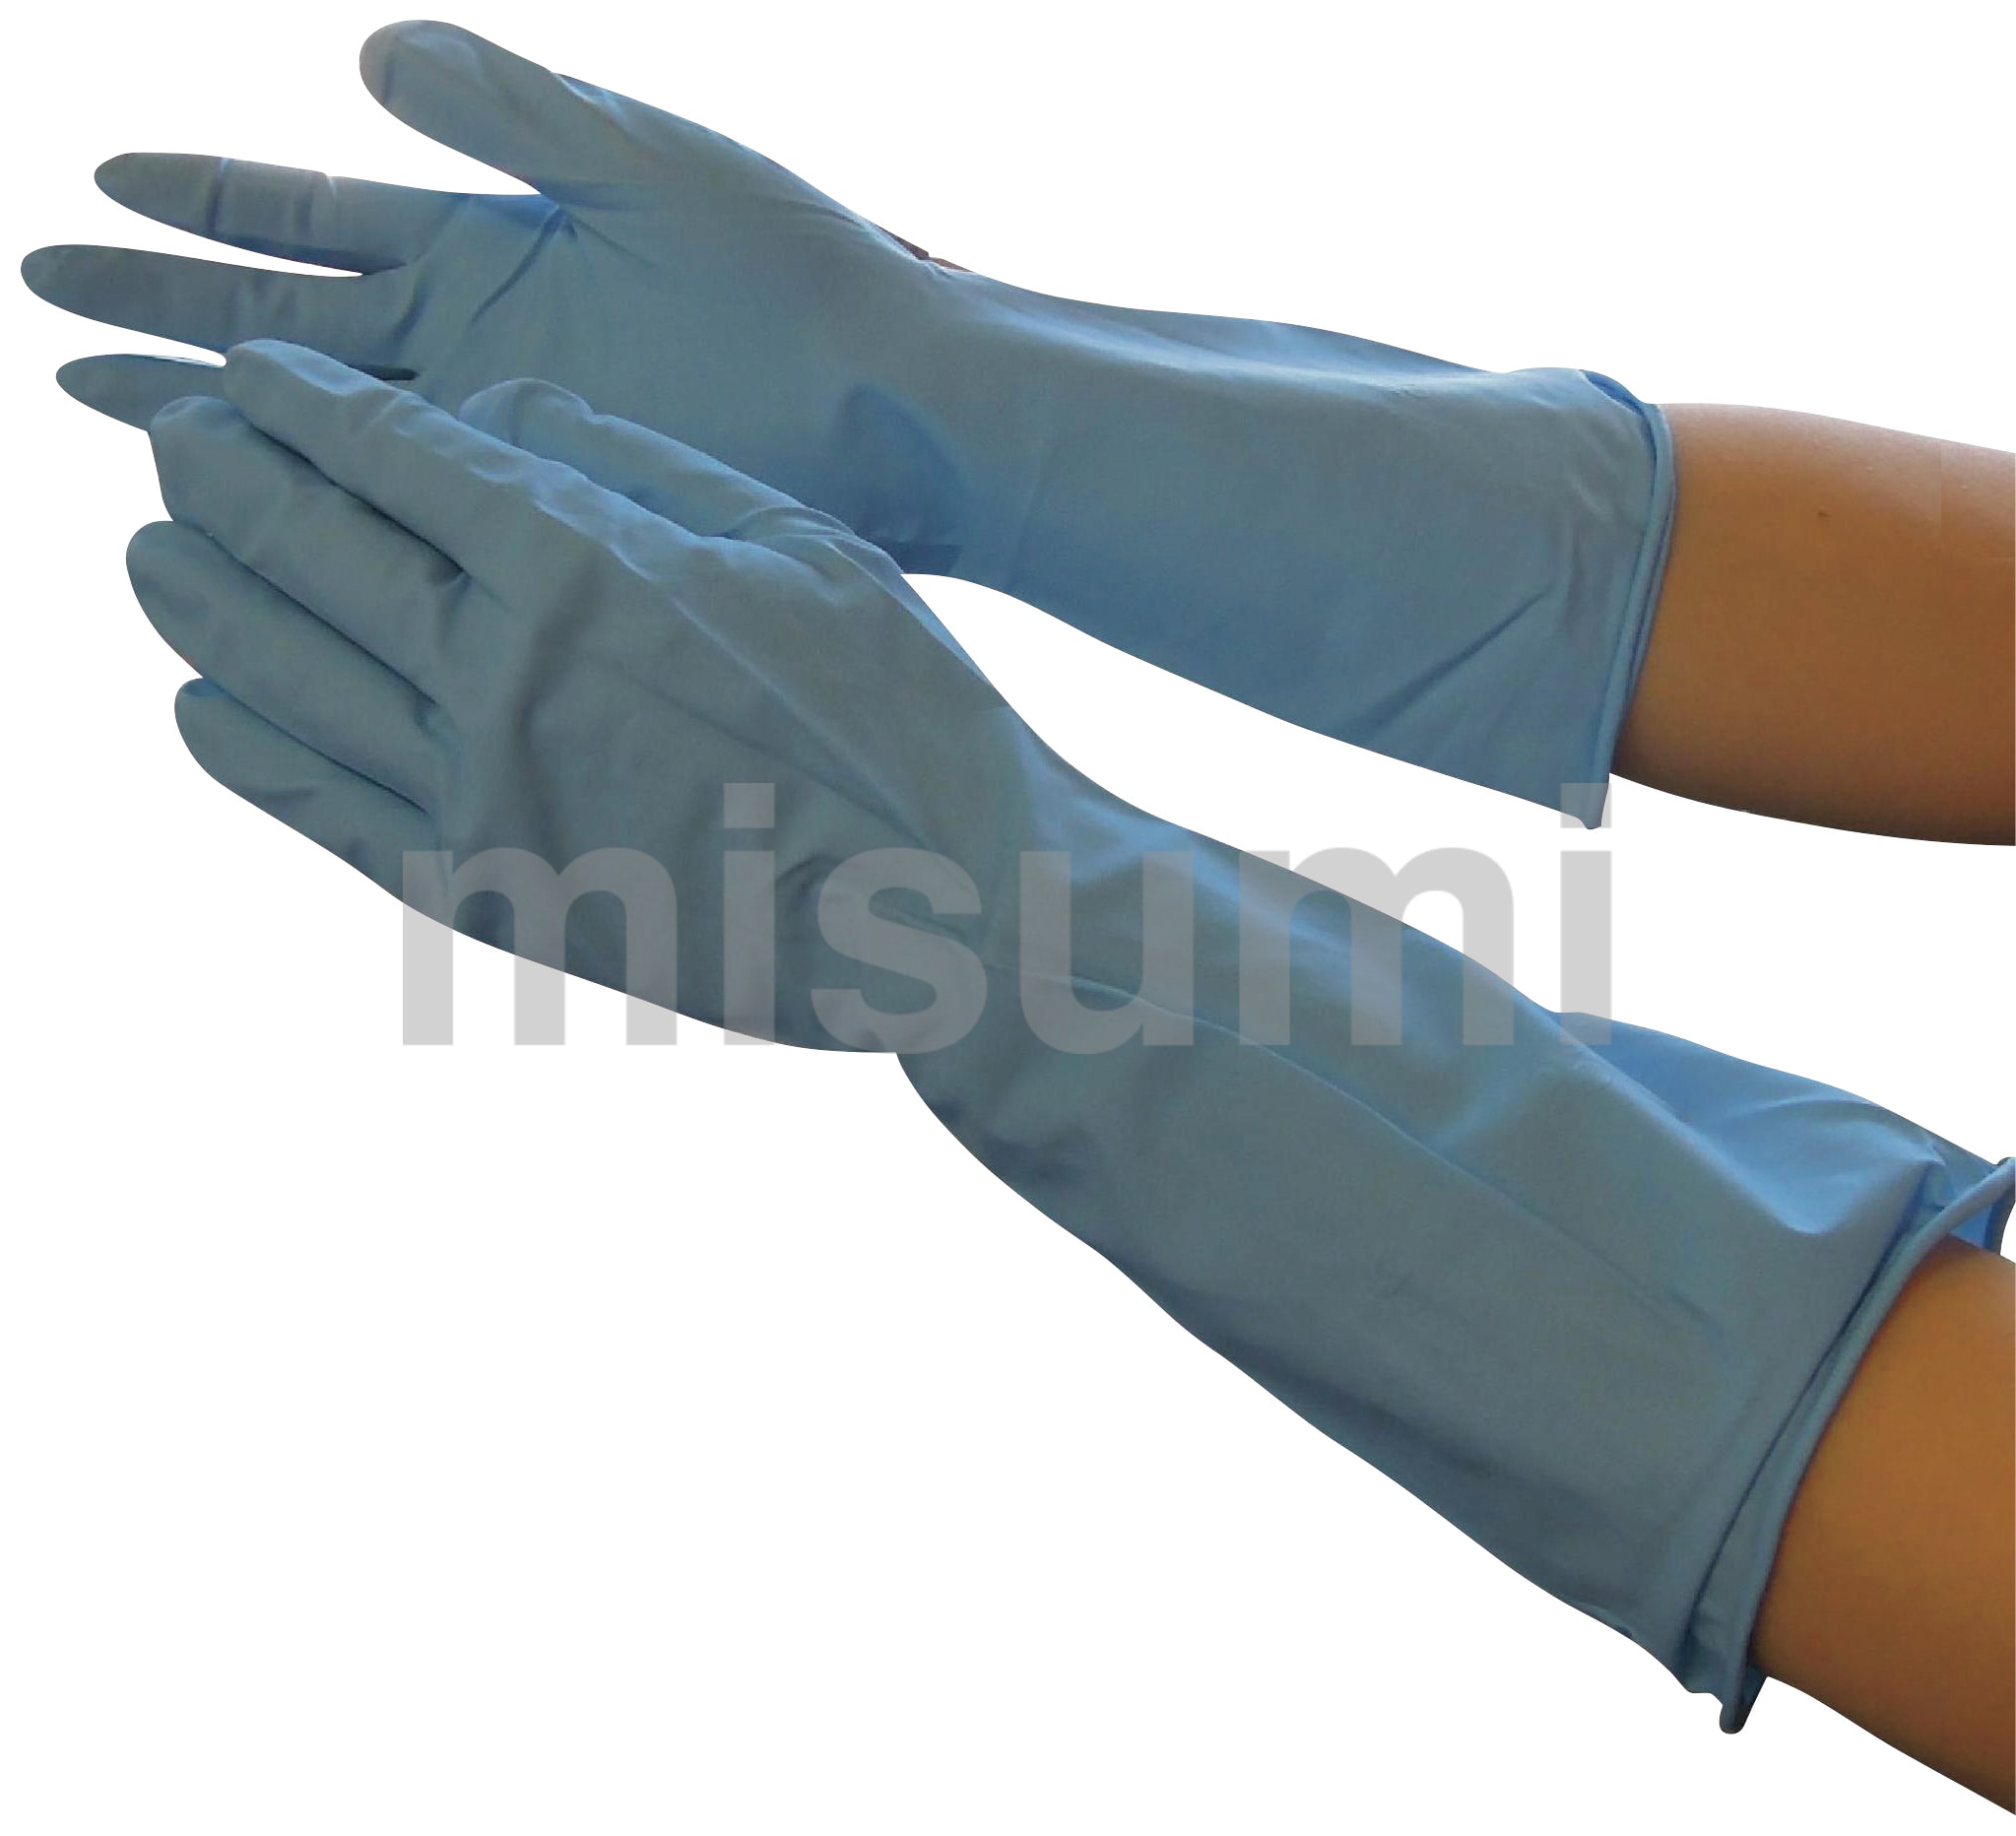 528-L 作業用手袋 ニューニトリルサーチ 10双入 東和コーポレーション（トワロン） ミスミ 420-4492